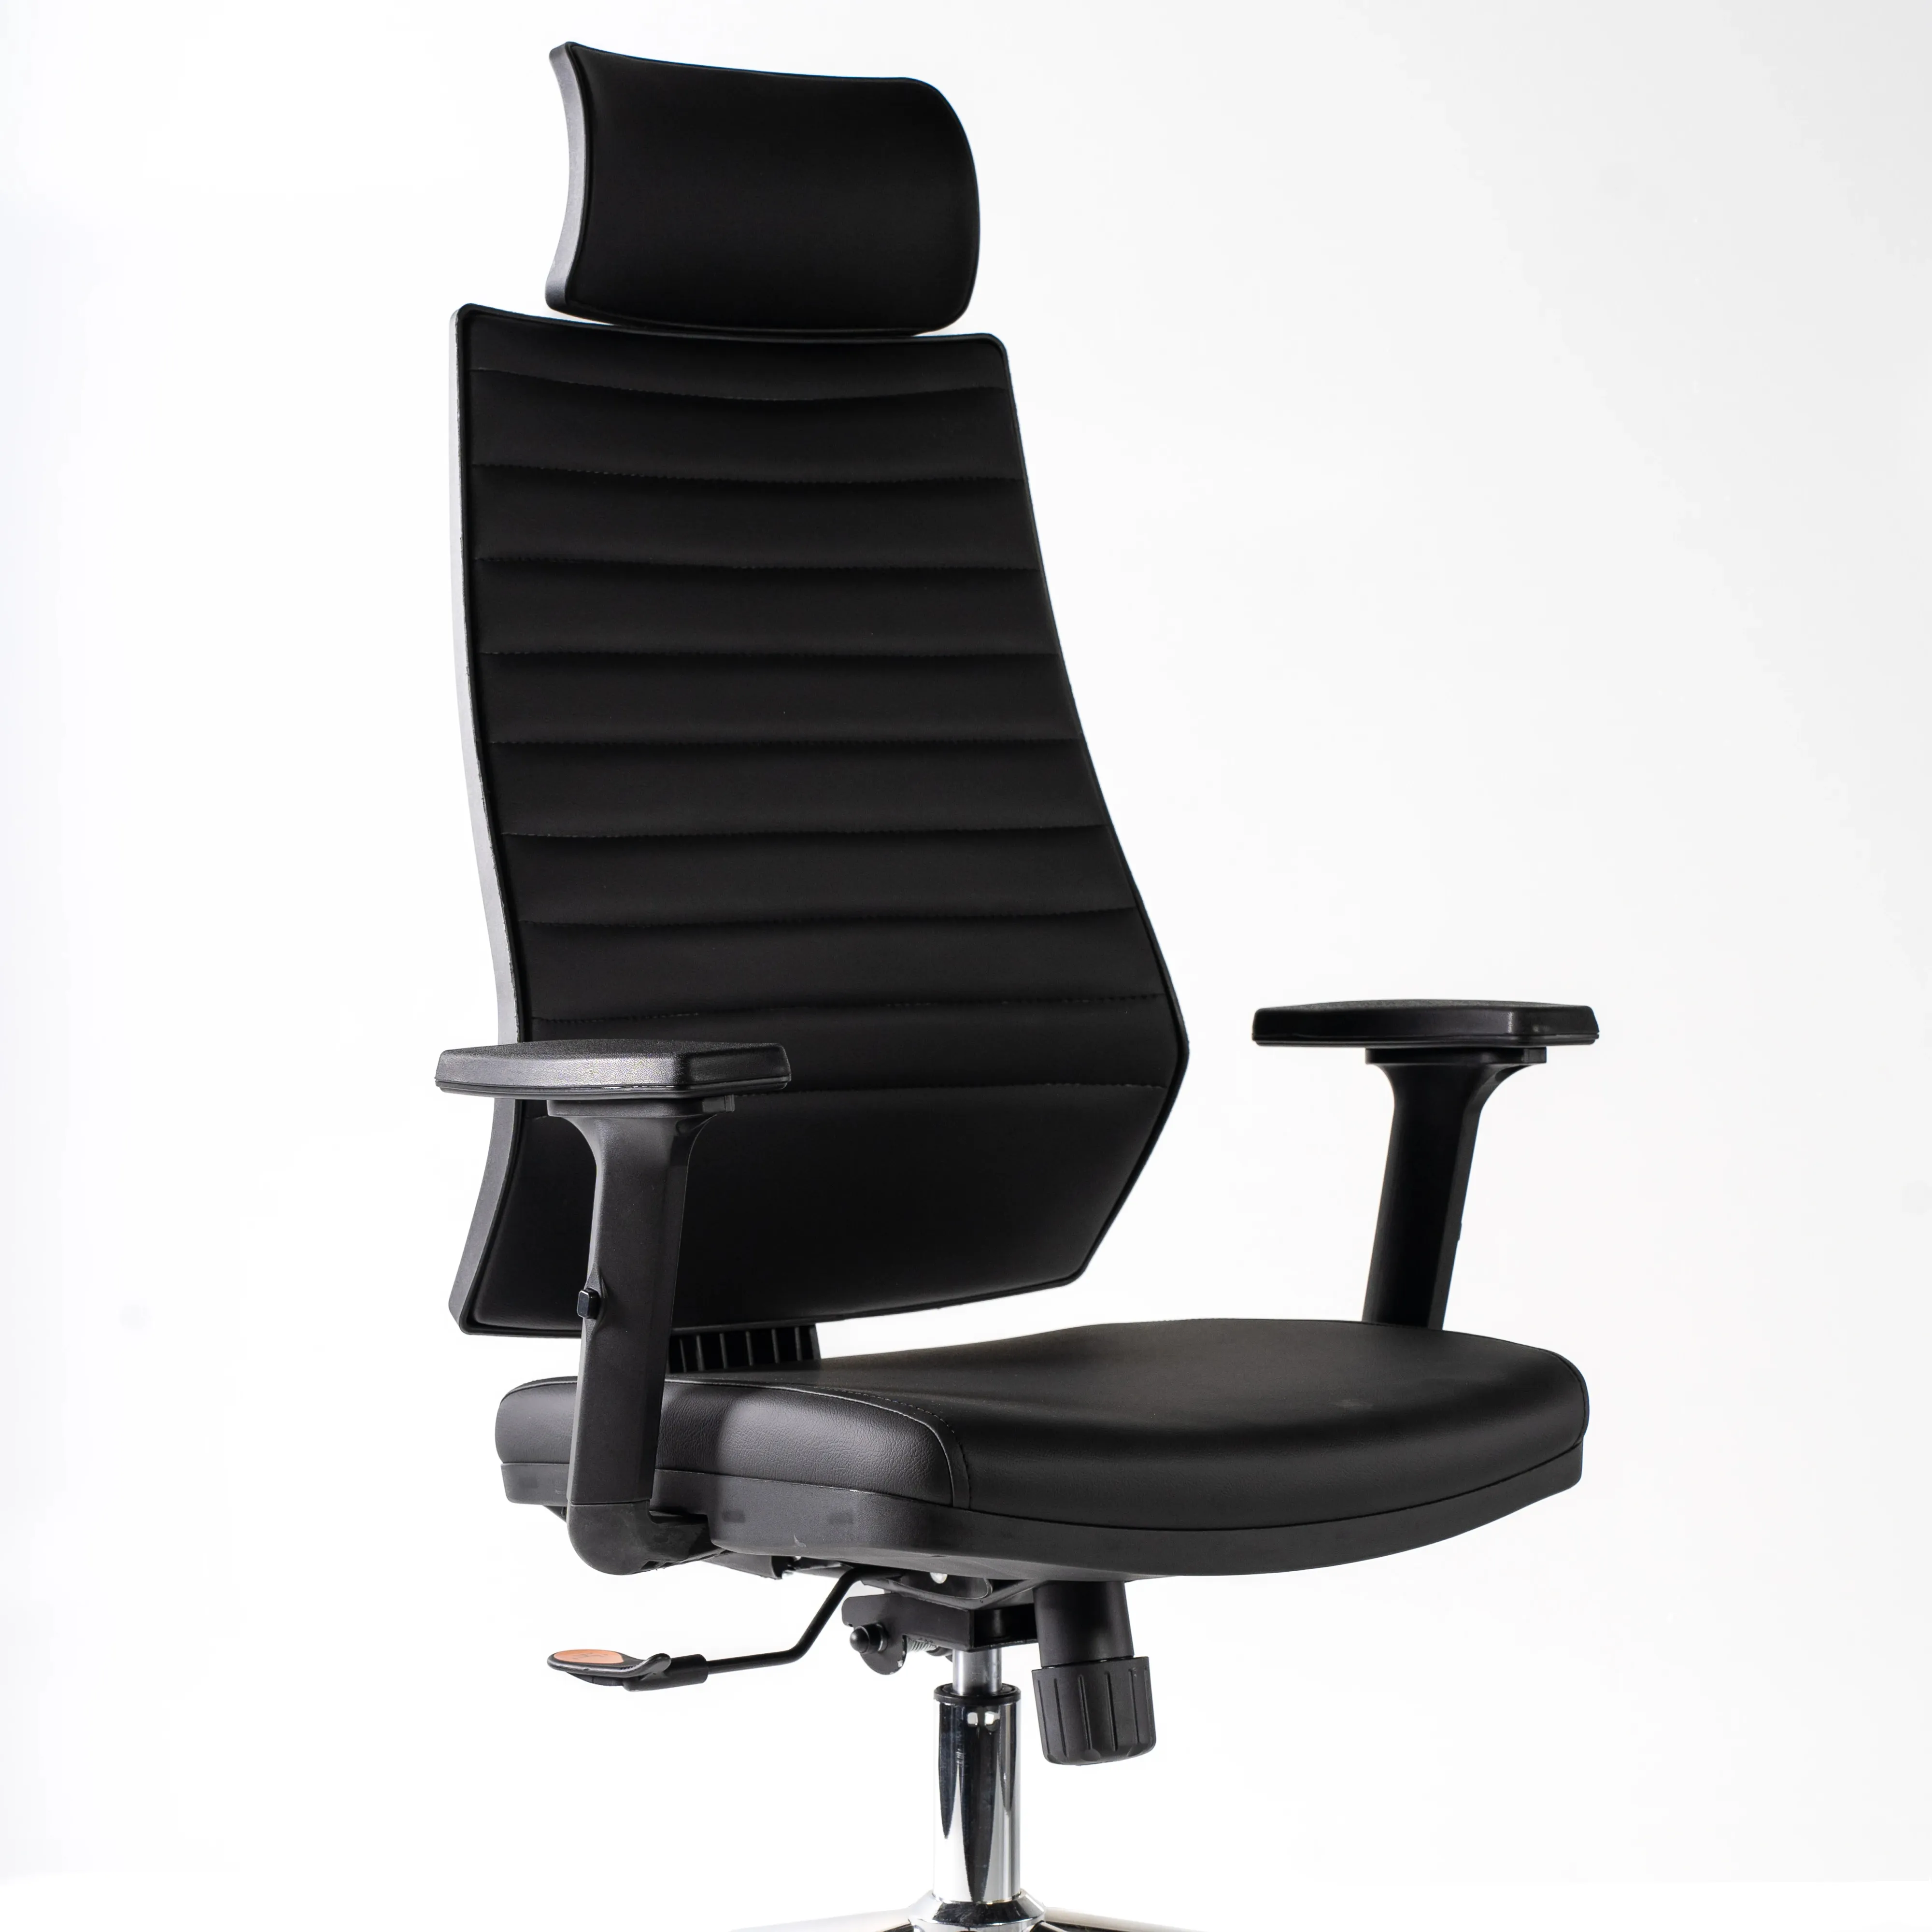 Эргономичный офисный стул для руководителей удобный и функциональный дизайн для использования на рабочем месте